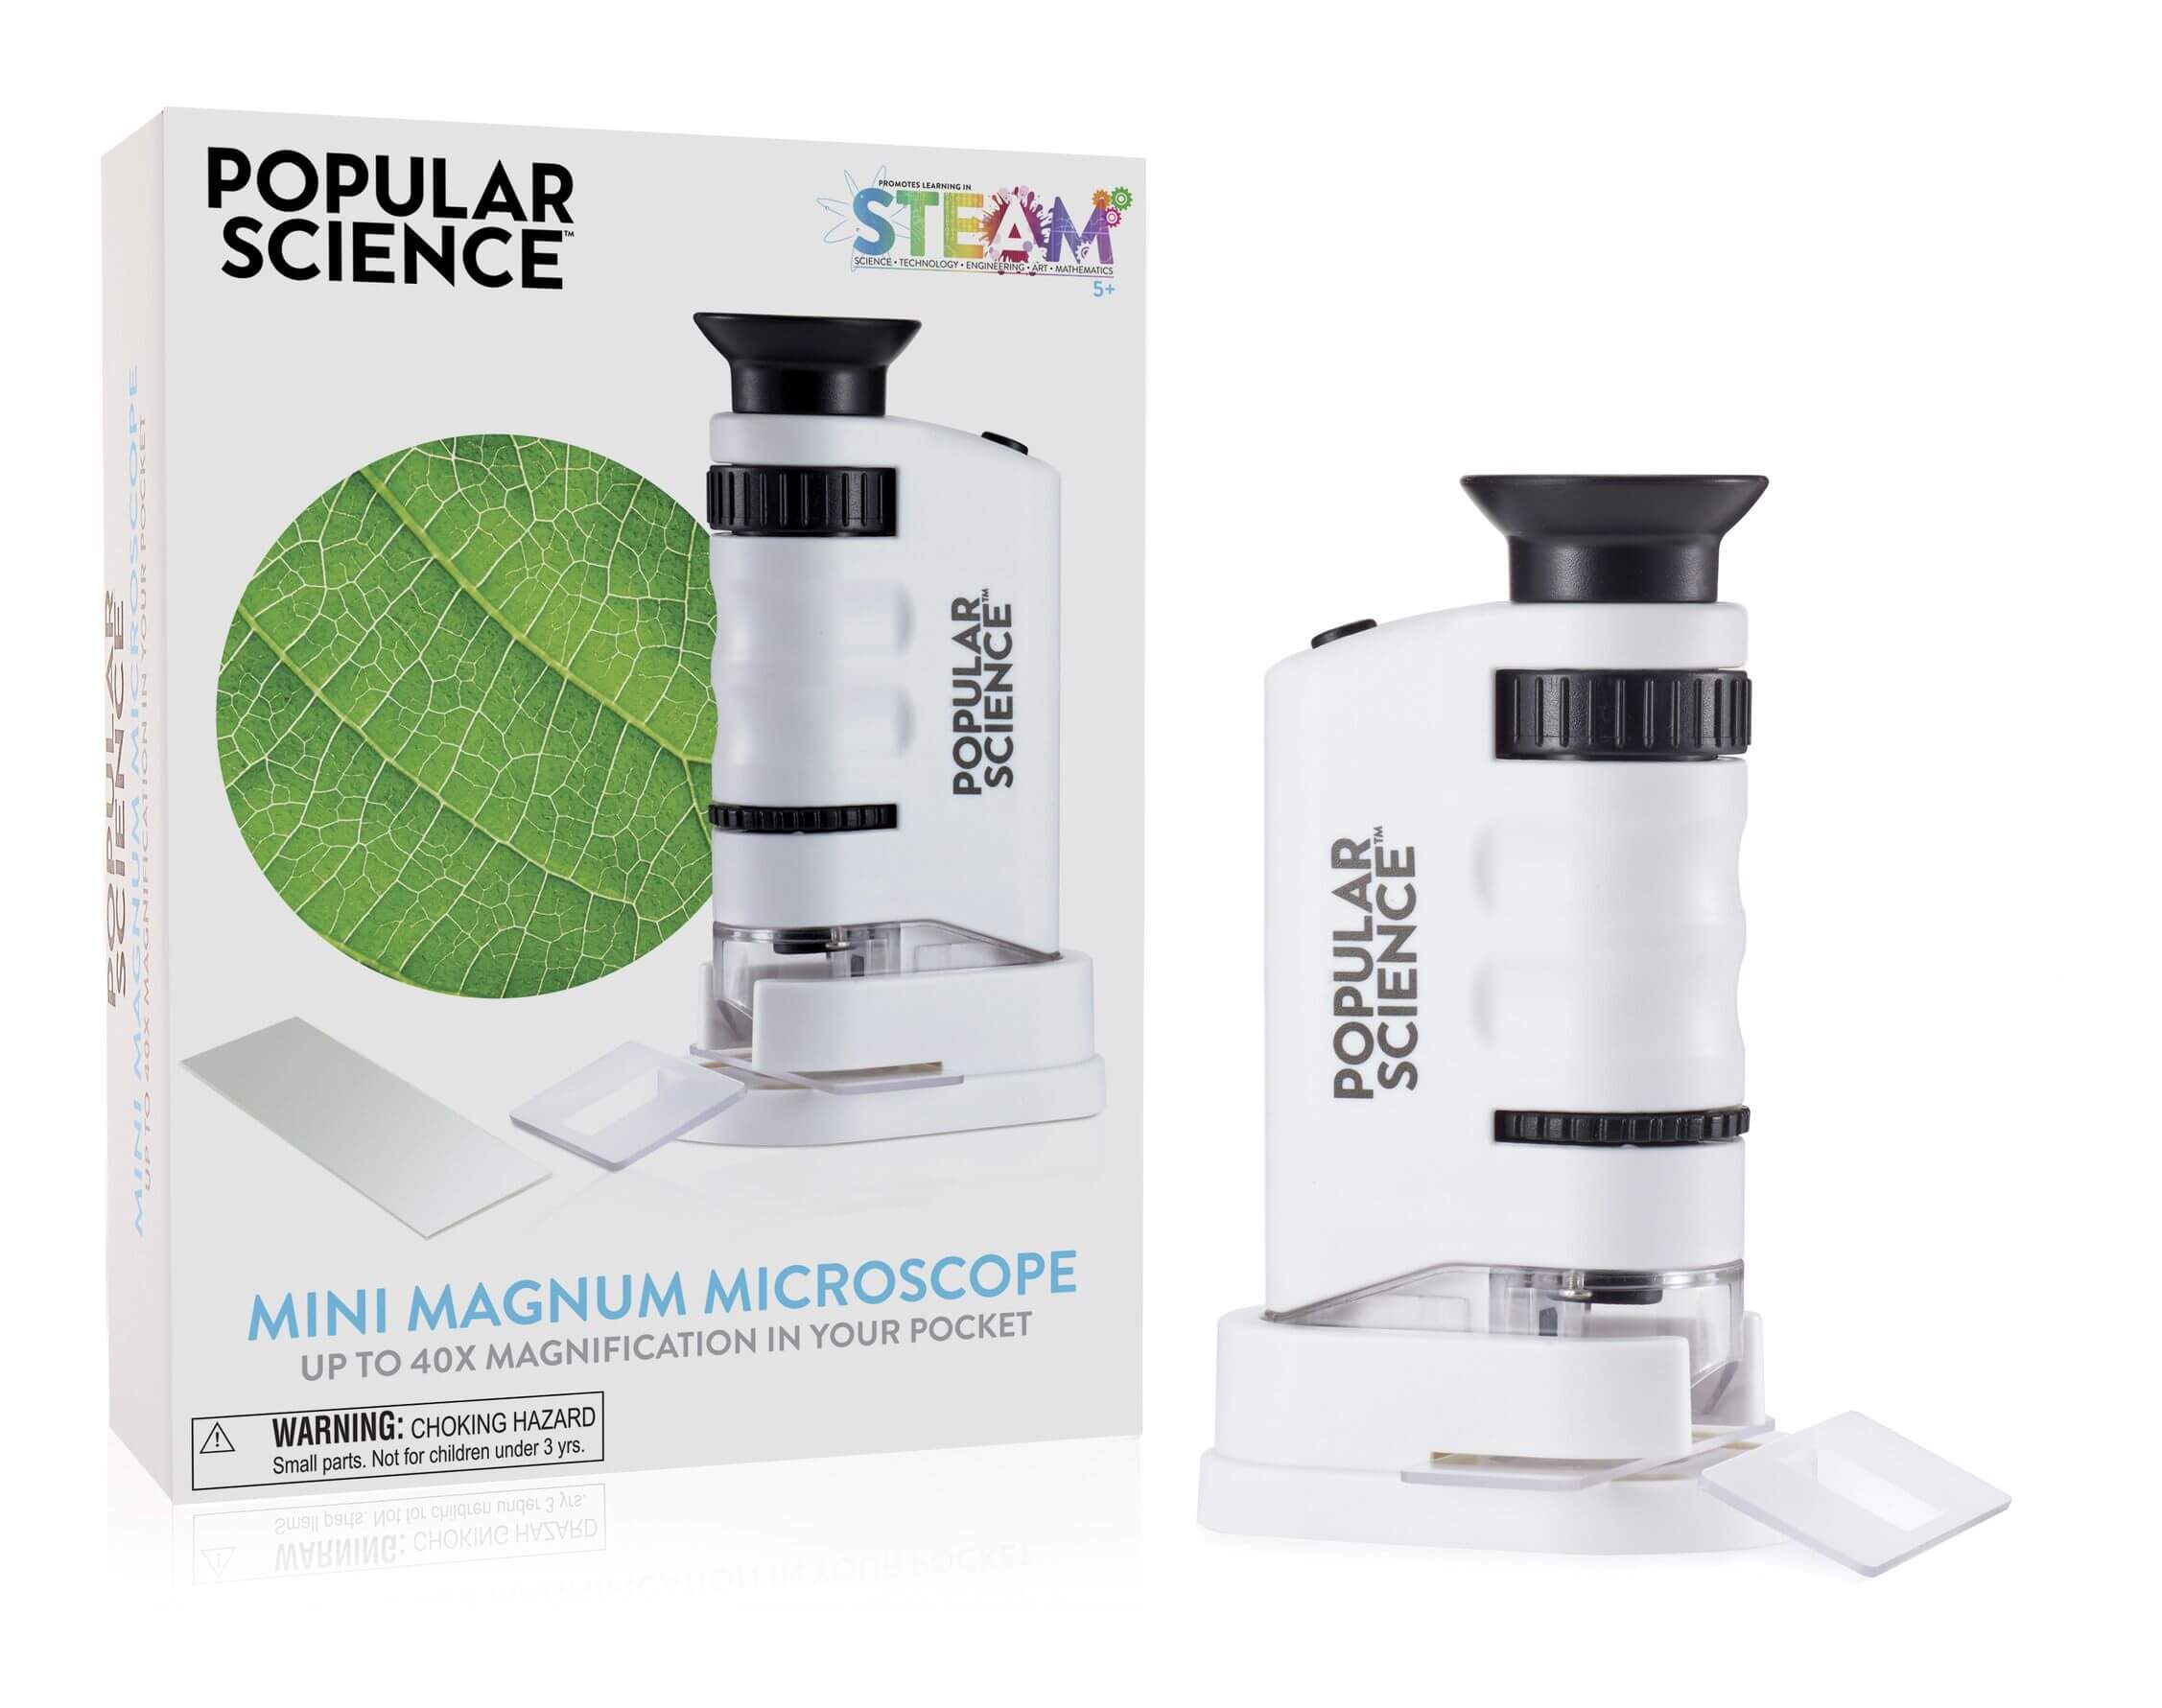 pocket microscope popular science